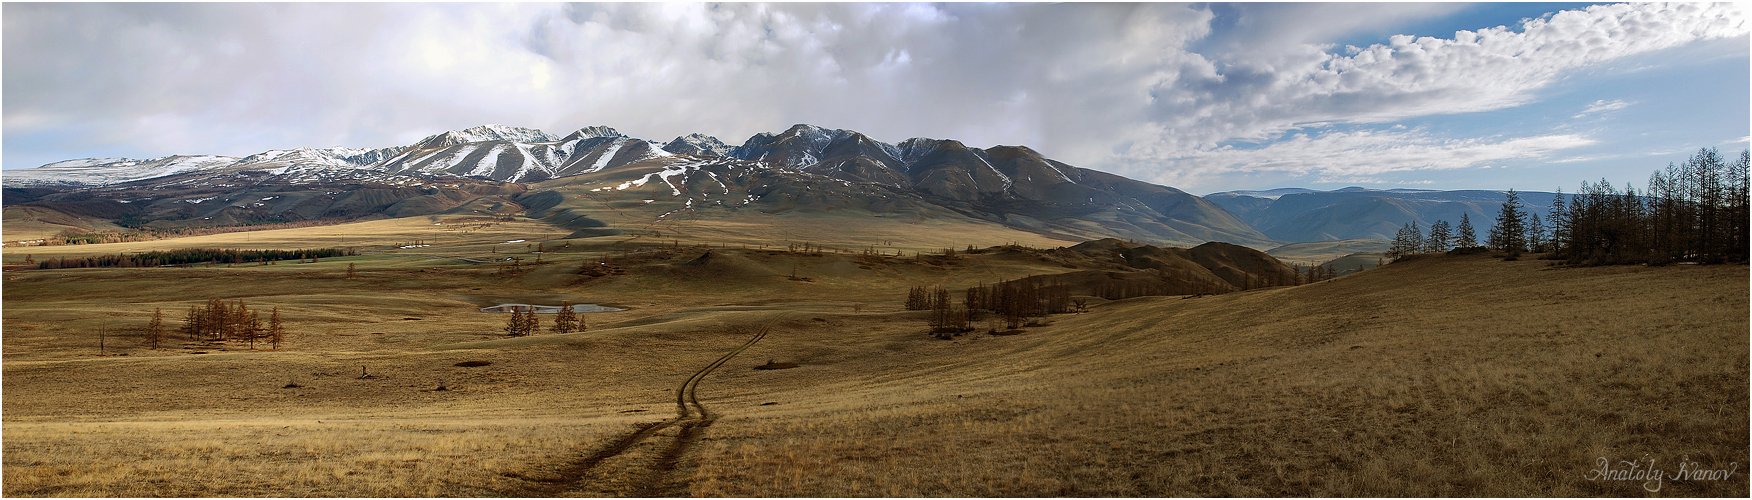 горный алтай, курайская степь, северо-чуйский хребет, Анатолий Иванов